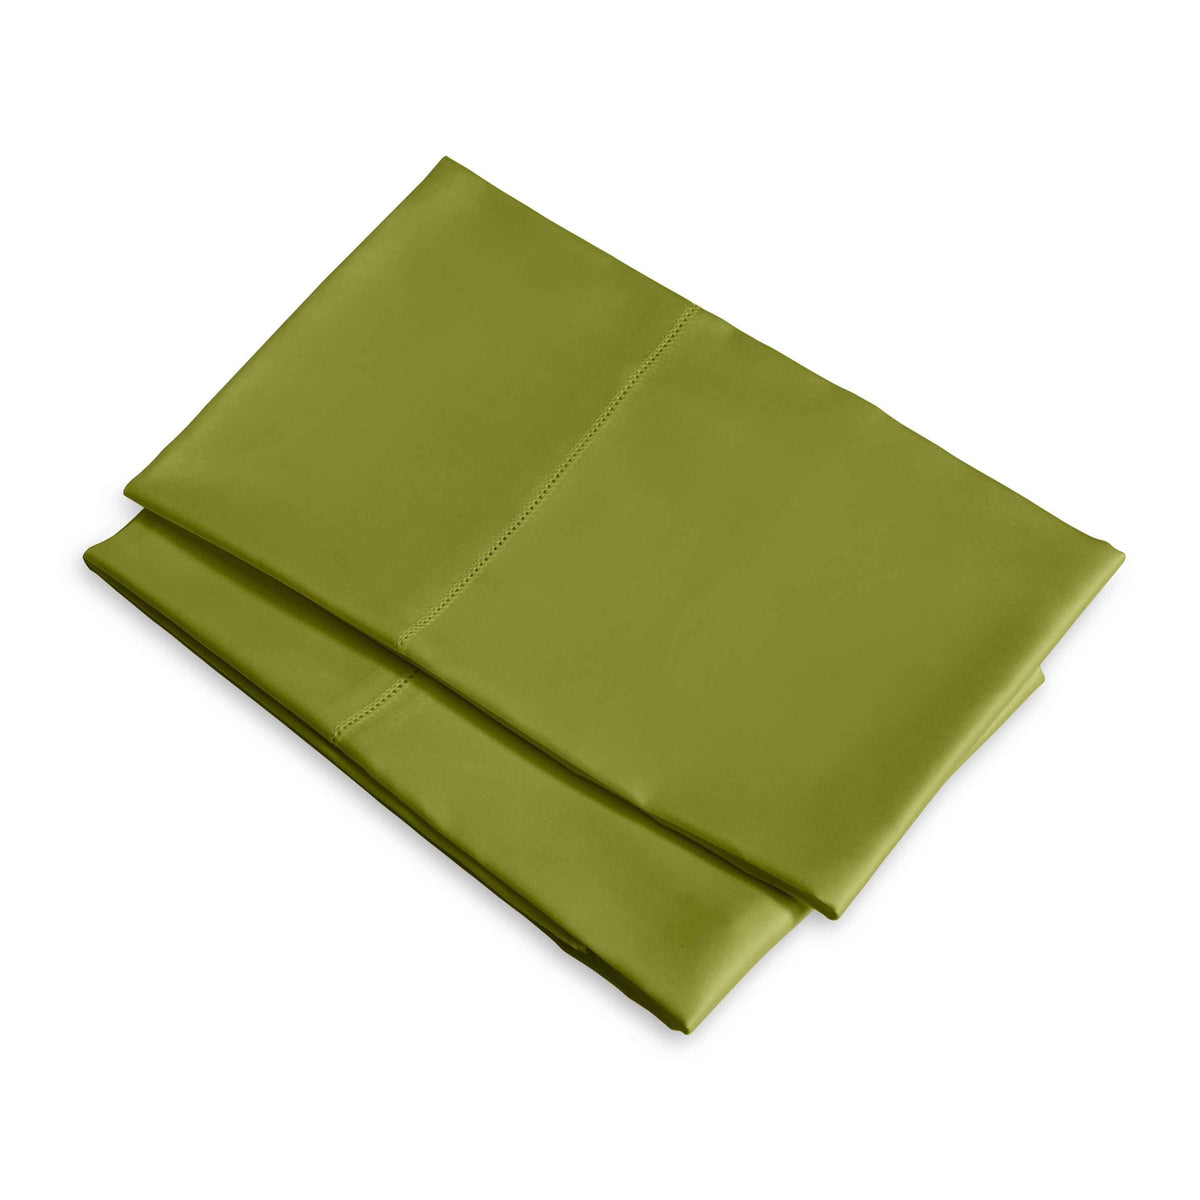 Clear Image of Signoria Raffaello Pillowcases in Moss Green Color